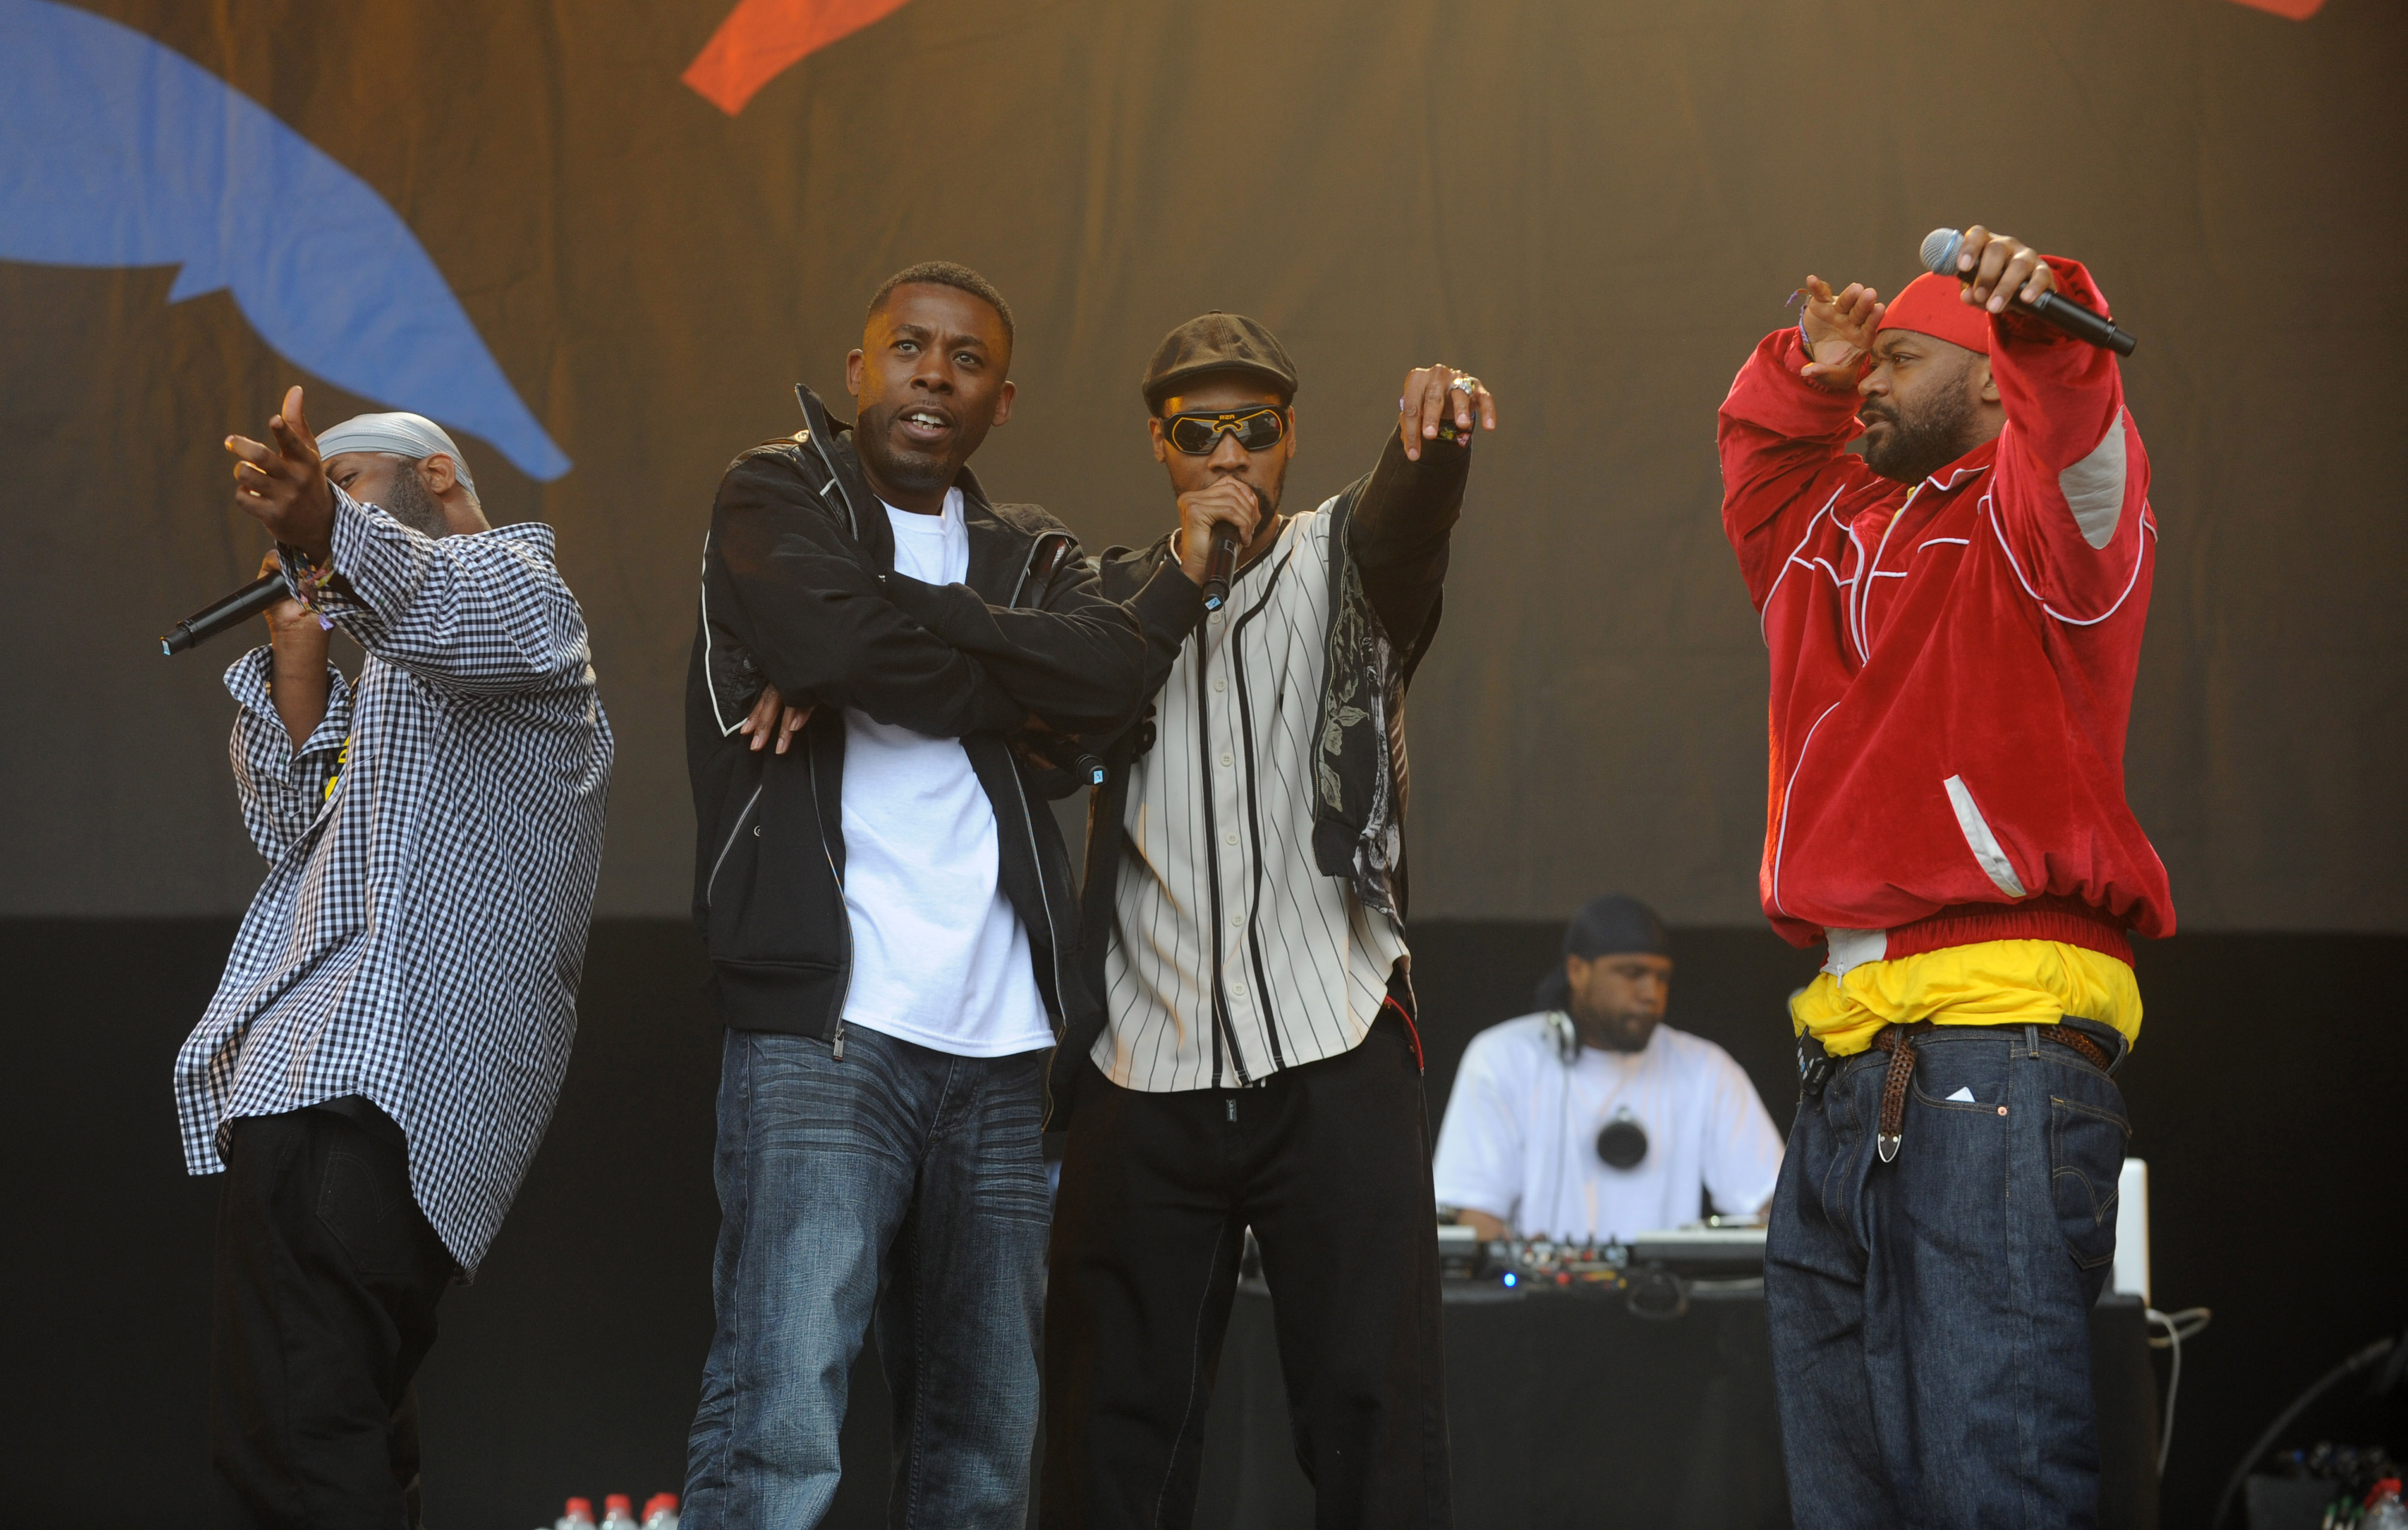 Di base a Staten Island (New York), il Wu Tang clan (RZA, GZA, Ol' Dirty Bastard, Method Man, Raekwon, Ghostface Killah, Inspectah Deck, U-God, Masta Killa e infine Cappadonna, che dopo una lunga collaborazione esterna è diventato membro onorario del clan) è la prima ensemble a coniugare hip hop, cultura b-movie e delle arti marziali. Il loro capolavoro del 1993 'Enter Wu-Tang' è la pietra miliare dell'hardcore rap e l'hip opera più significativa degli anni '90. Nel 1997 l'album 'Wu-Tang Forever' li trasforma in un fenomeno sinergico, multimediale e commerciale di proporzioni inedite e, nel suo genere, inusitate. Ol' Dirty Bastard, famoso per le sue liriche particolarmente contorte, muore nel 2004 per un'overdose di cocaina.